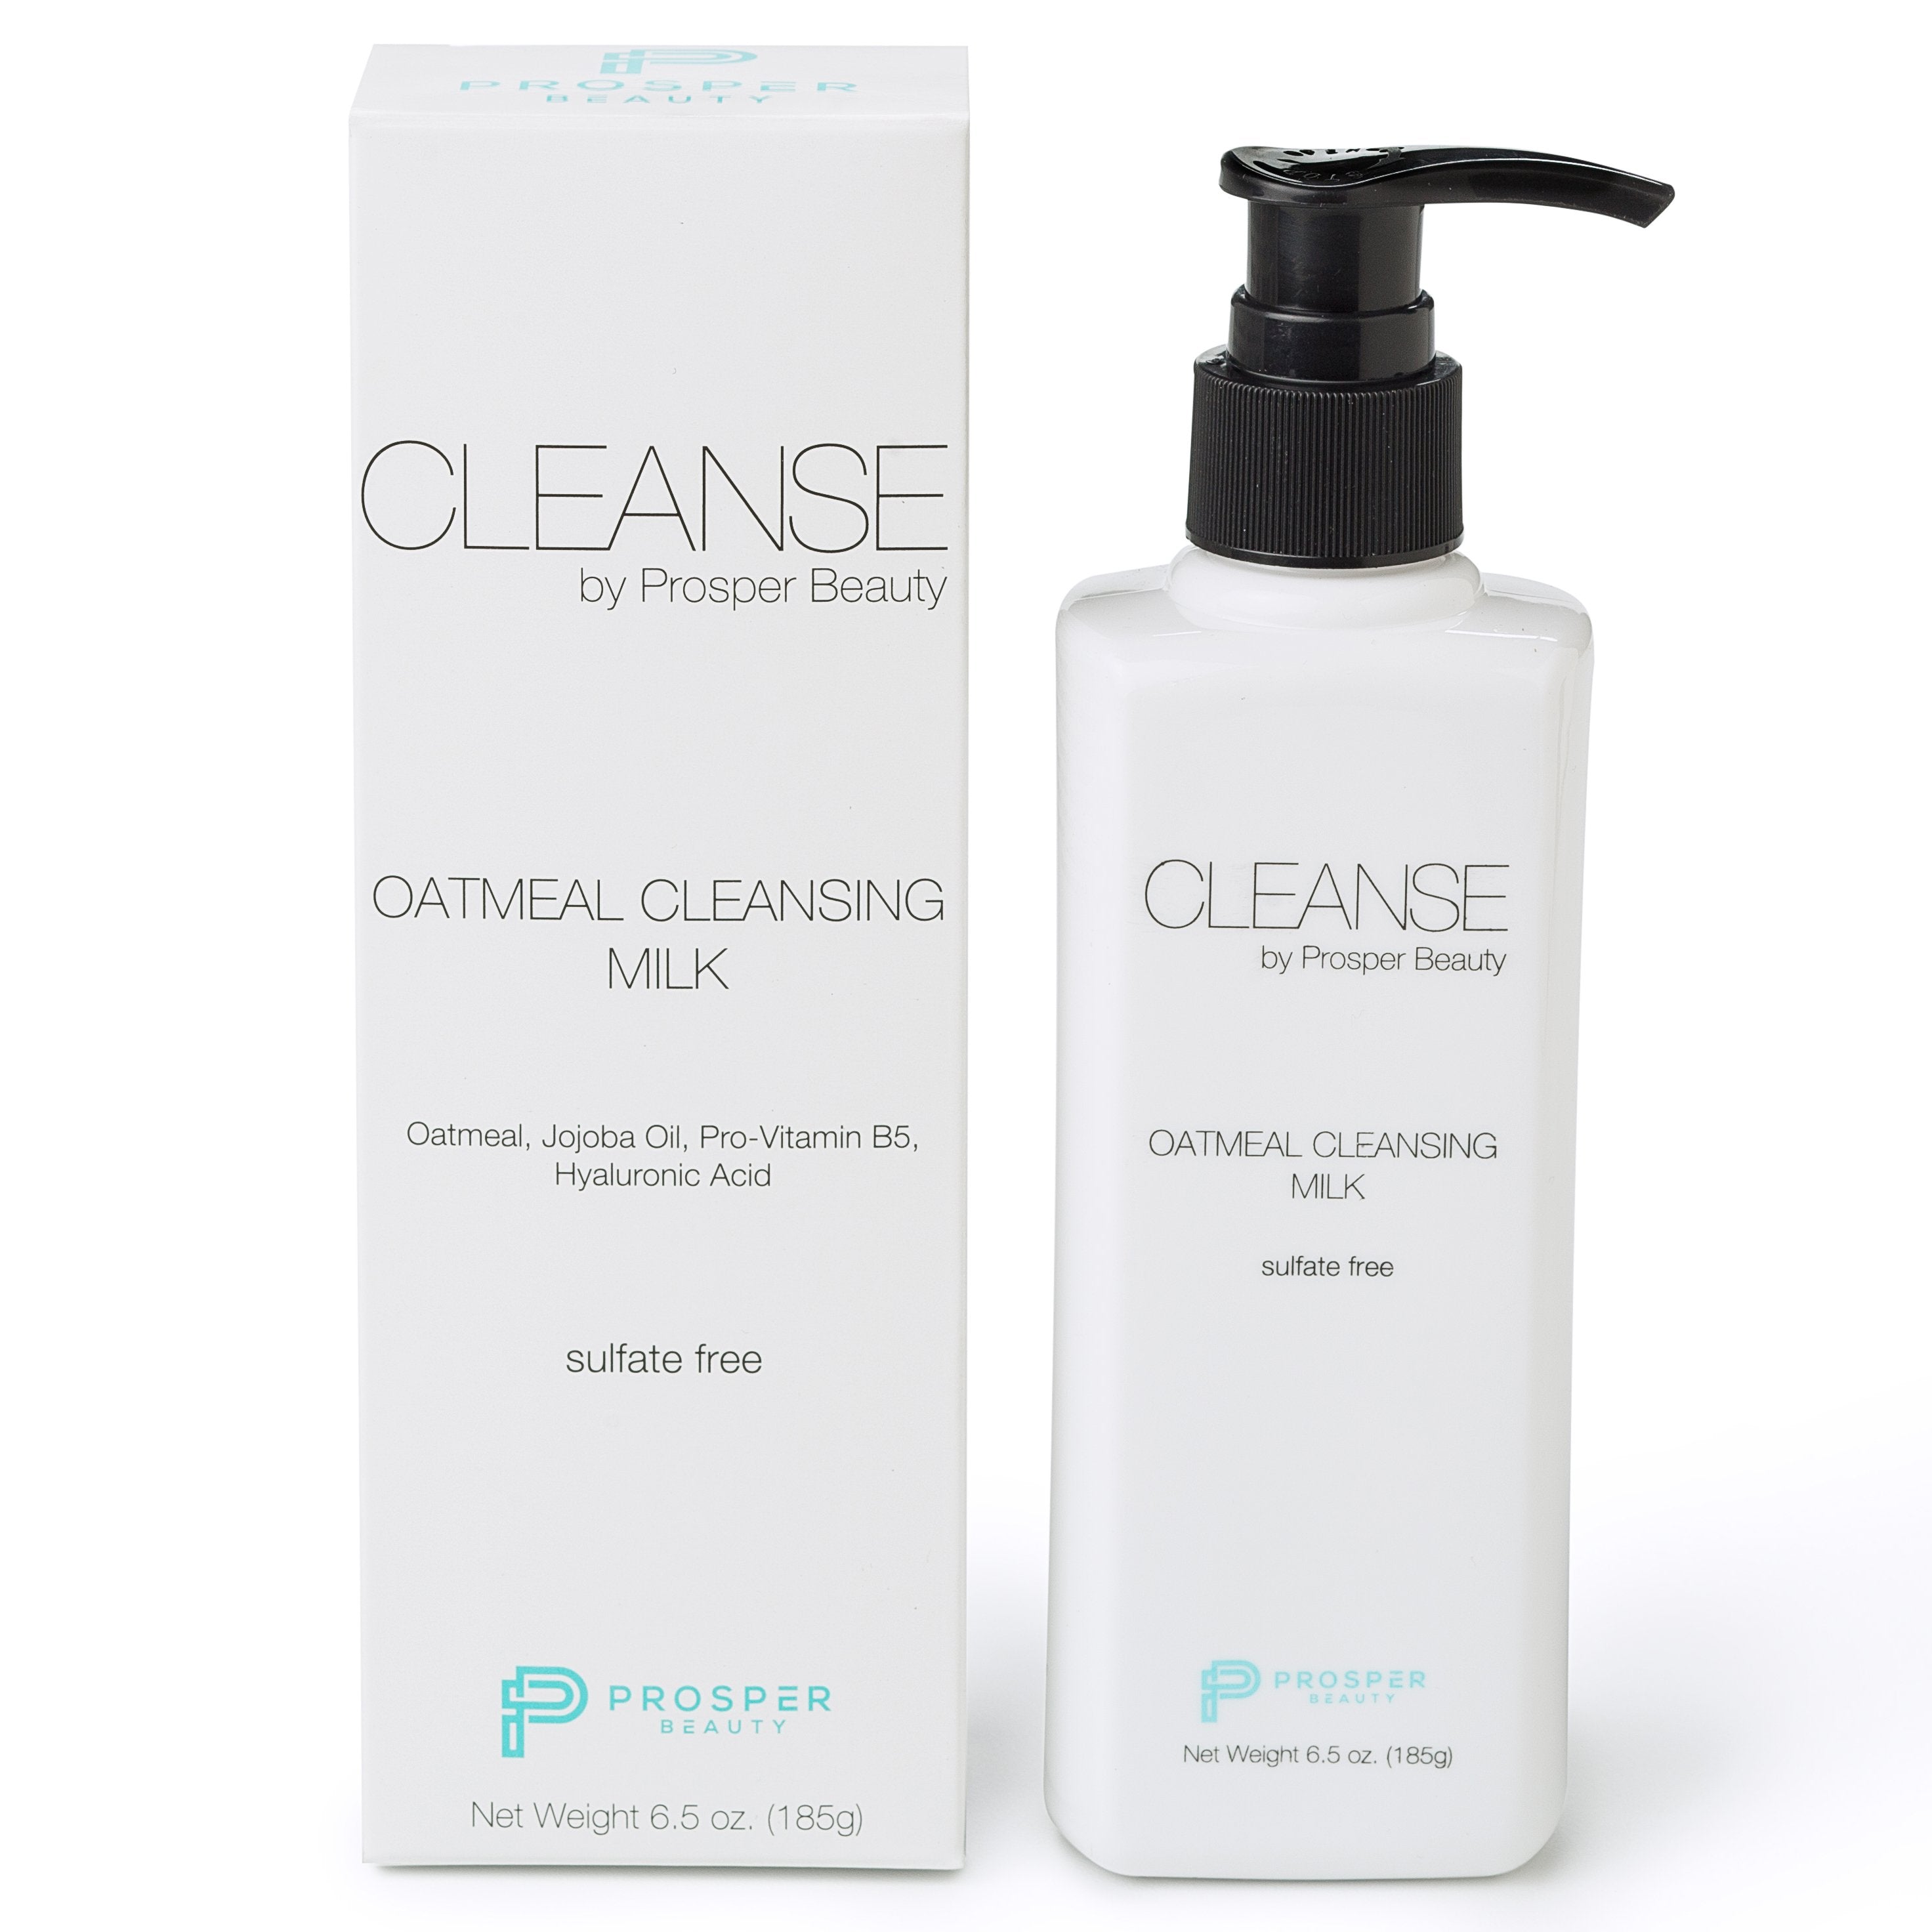 CLEANSE by Prosper Beauty (Oatmeal Cleansing Milk)